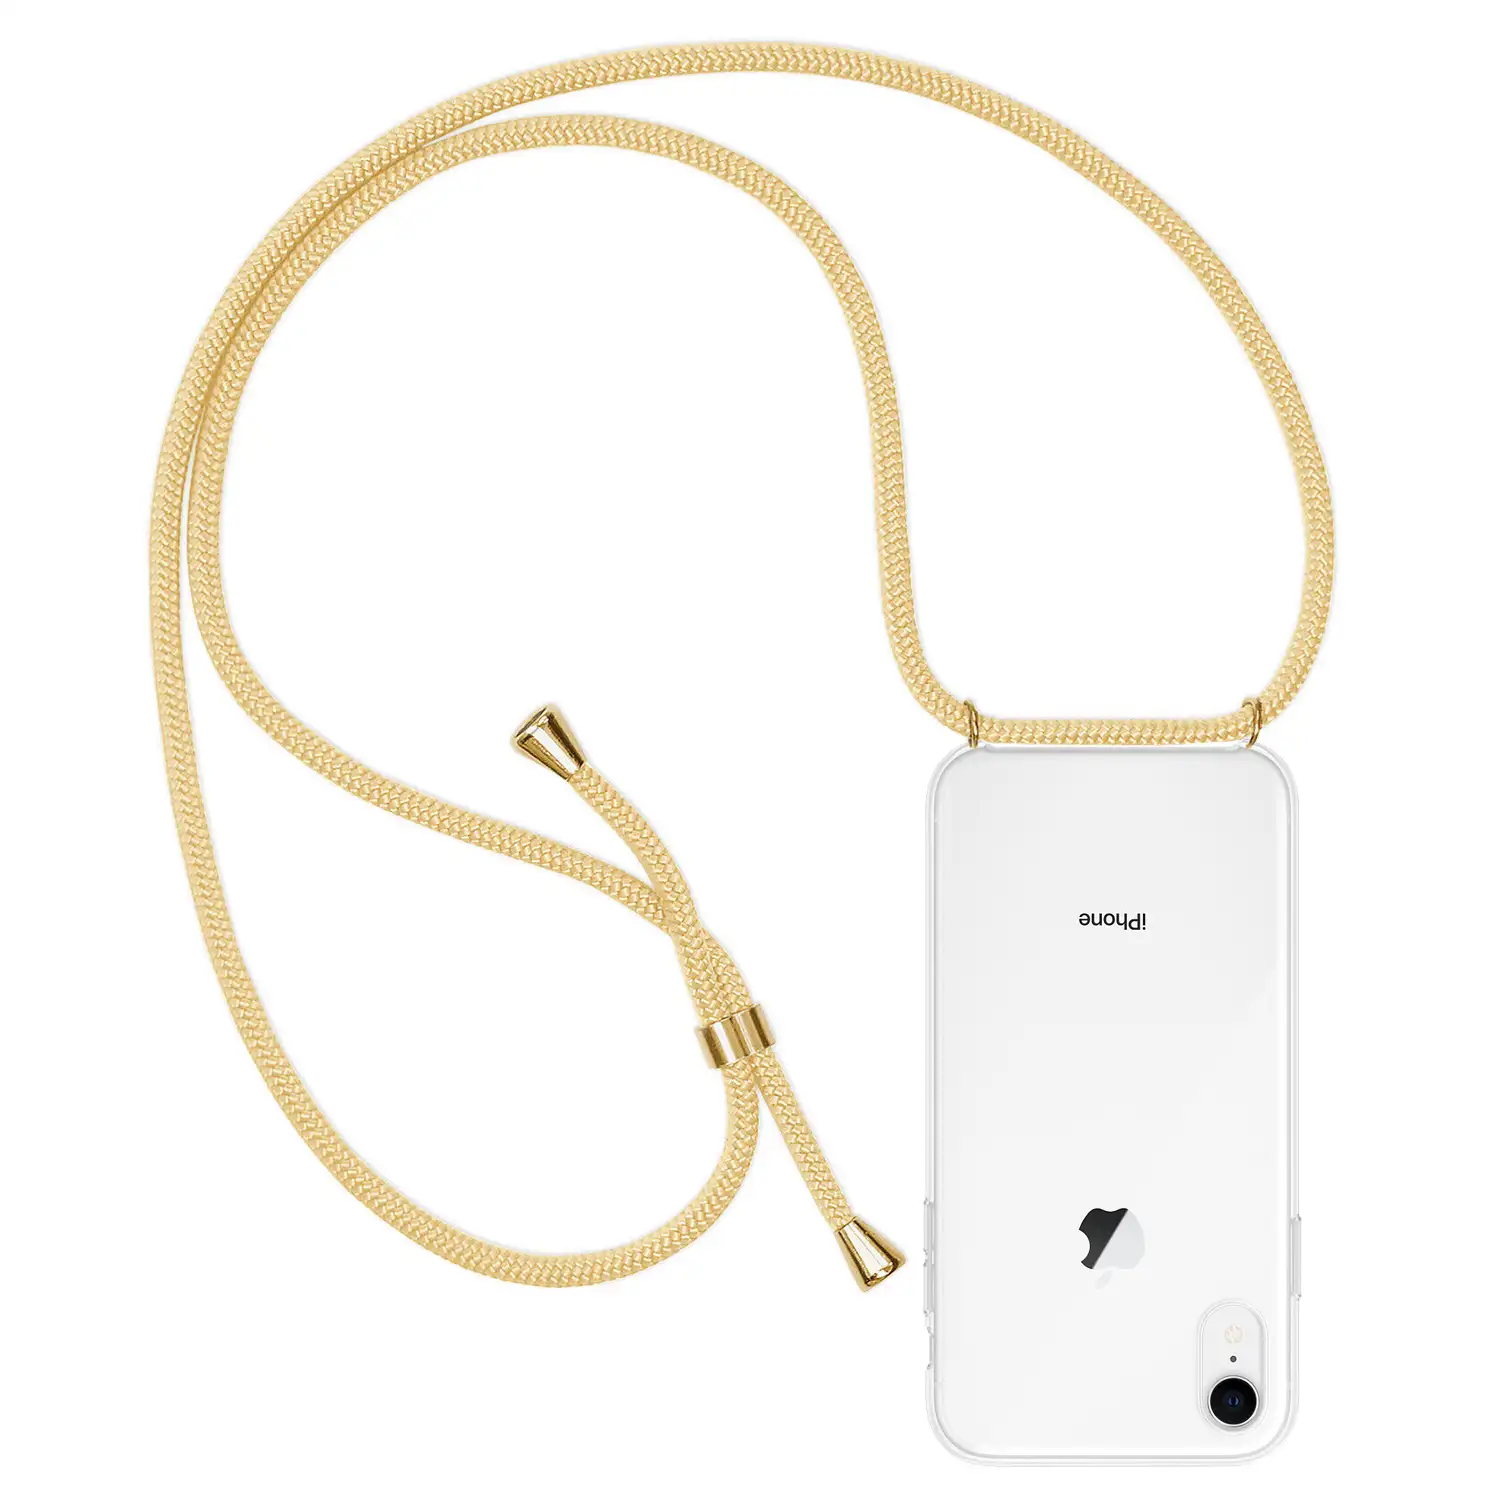 Carcasa transparente iPhone XR con colgante de nylon. Accesorio de moda, ajuste perfecto y máxima protección